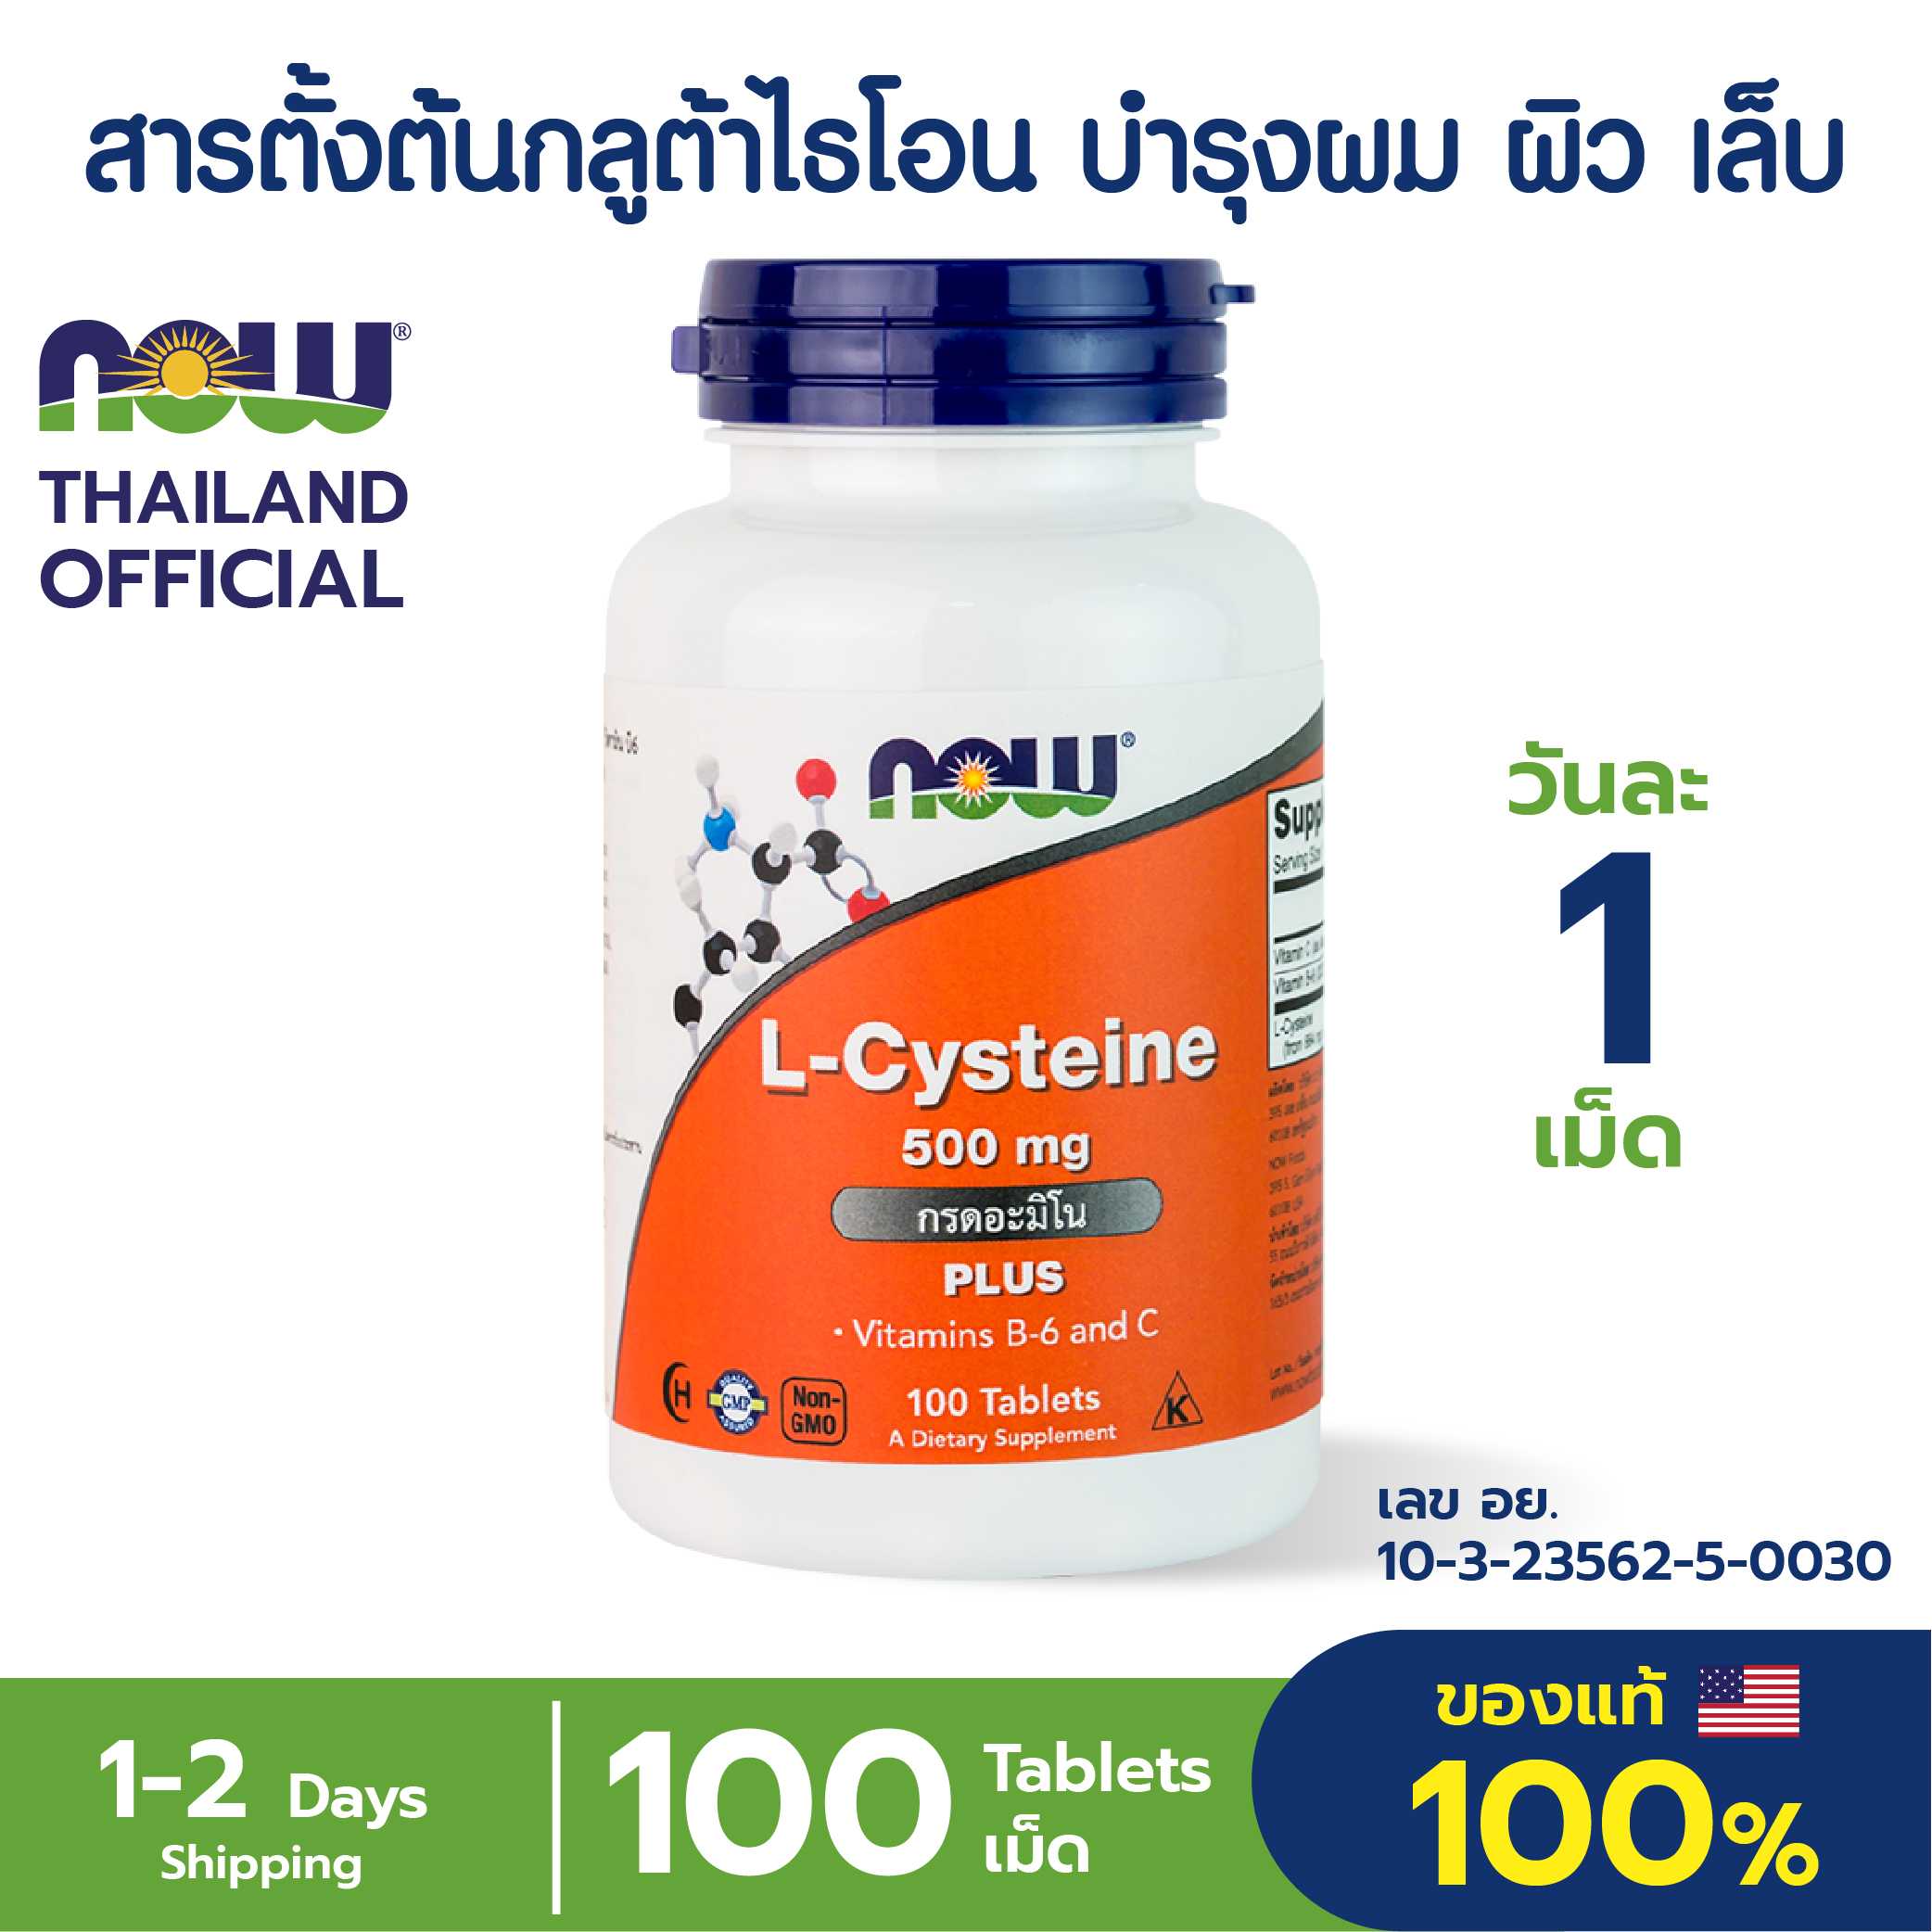 L-Cysteine,Plus Vitamin C B6, 500 mg 100 Tablets Dotox ตับ กำจัดสารพิษ ลดอักเสบระบบทางเดินหายใจ